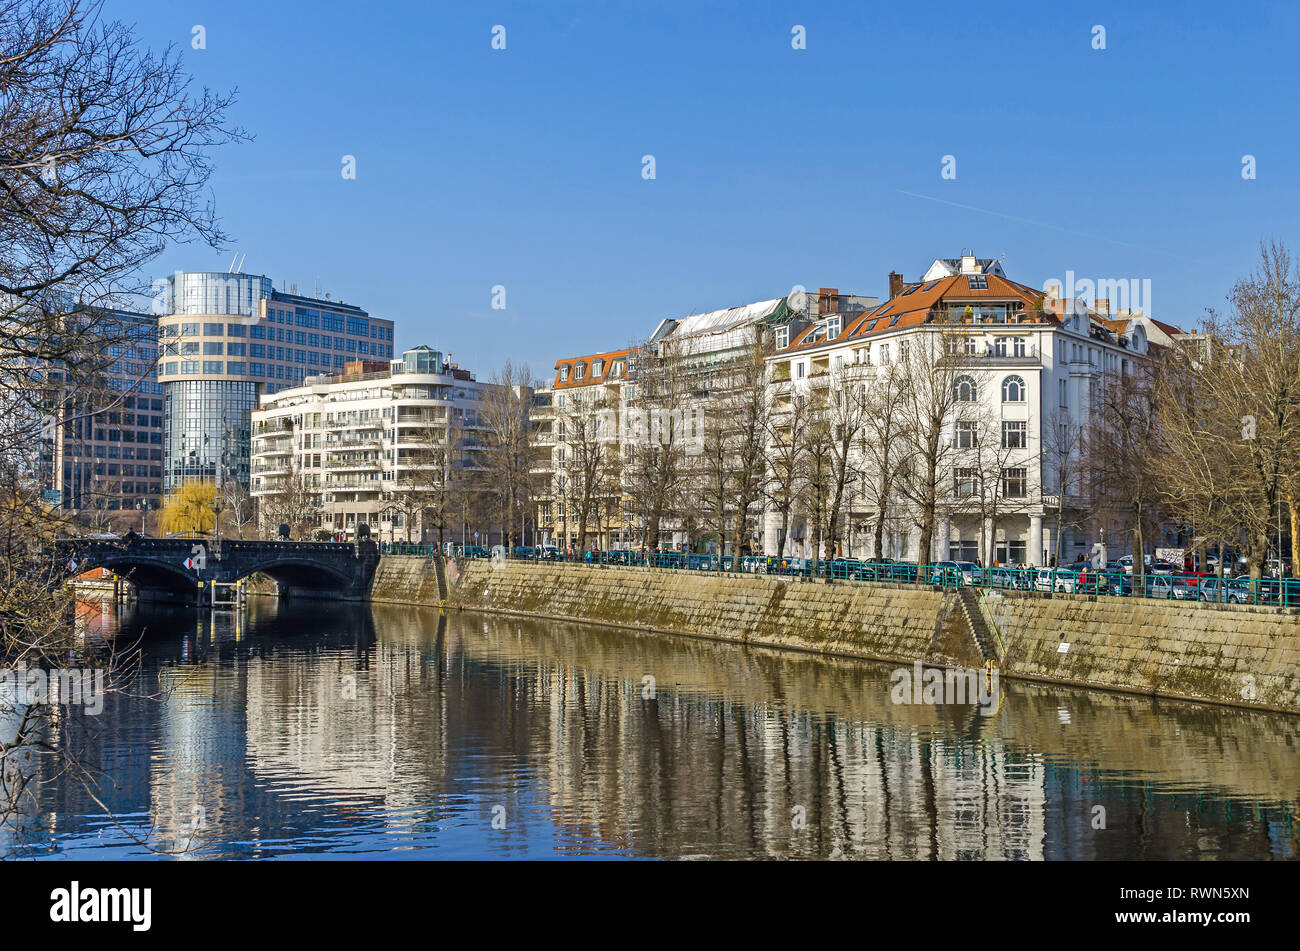 Berlin, Deutschland - 17. Februar 2019: Spree damm Helgolaender Ufer mit dem Moabiter Brücke, den neu gestalteten Bereich Spree-Bogen Stockfoto